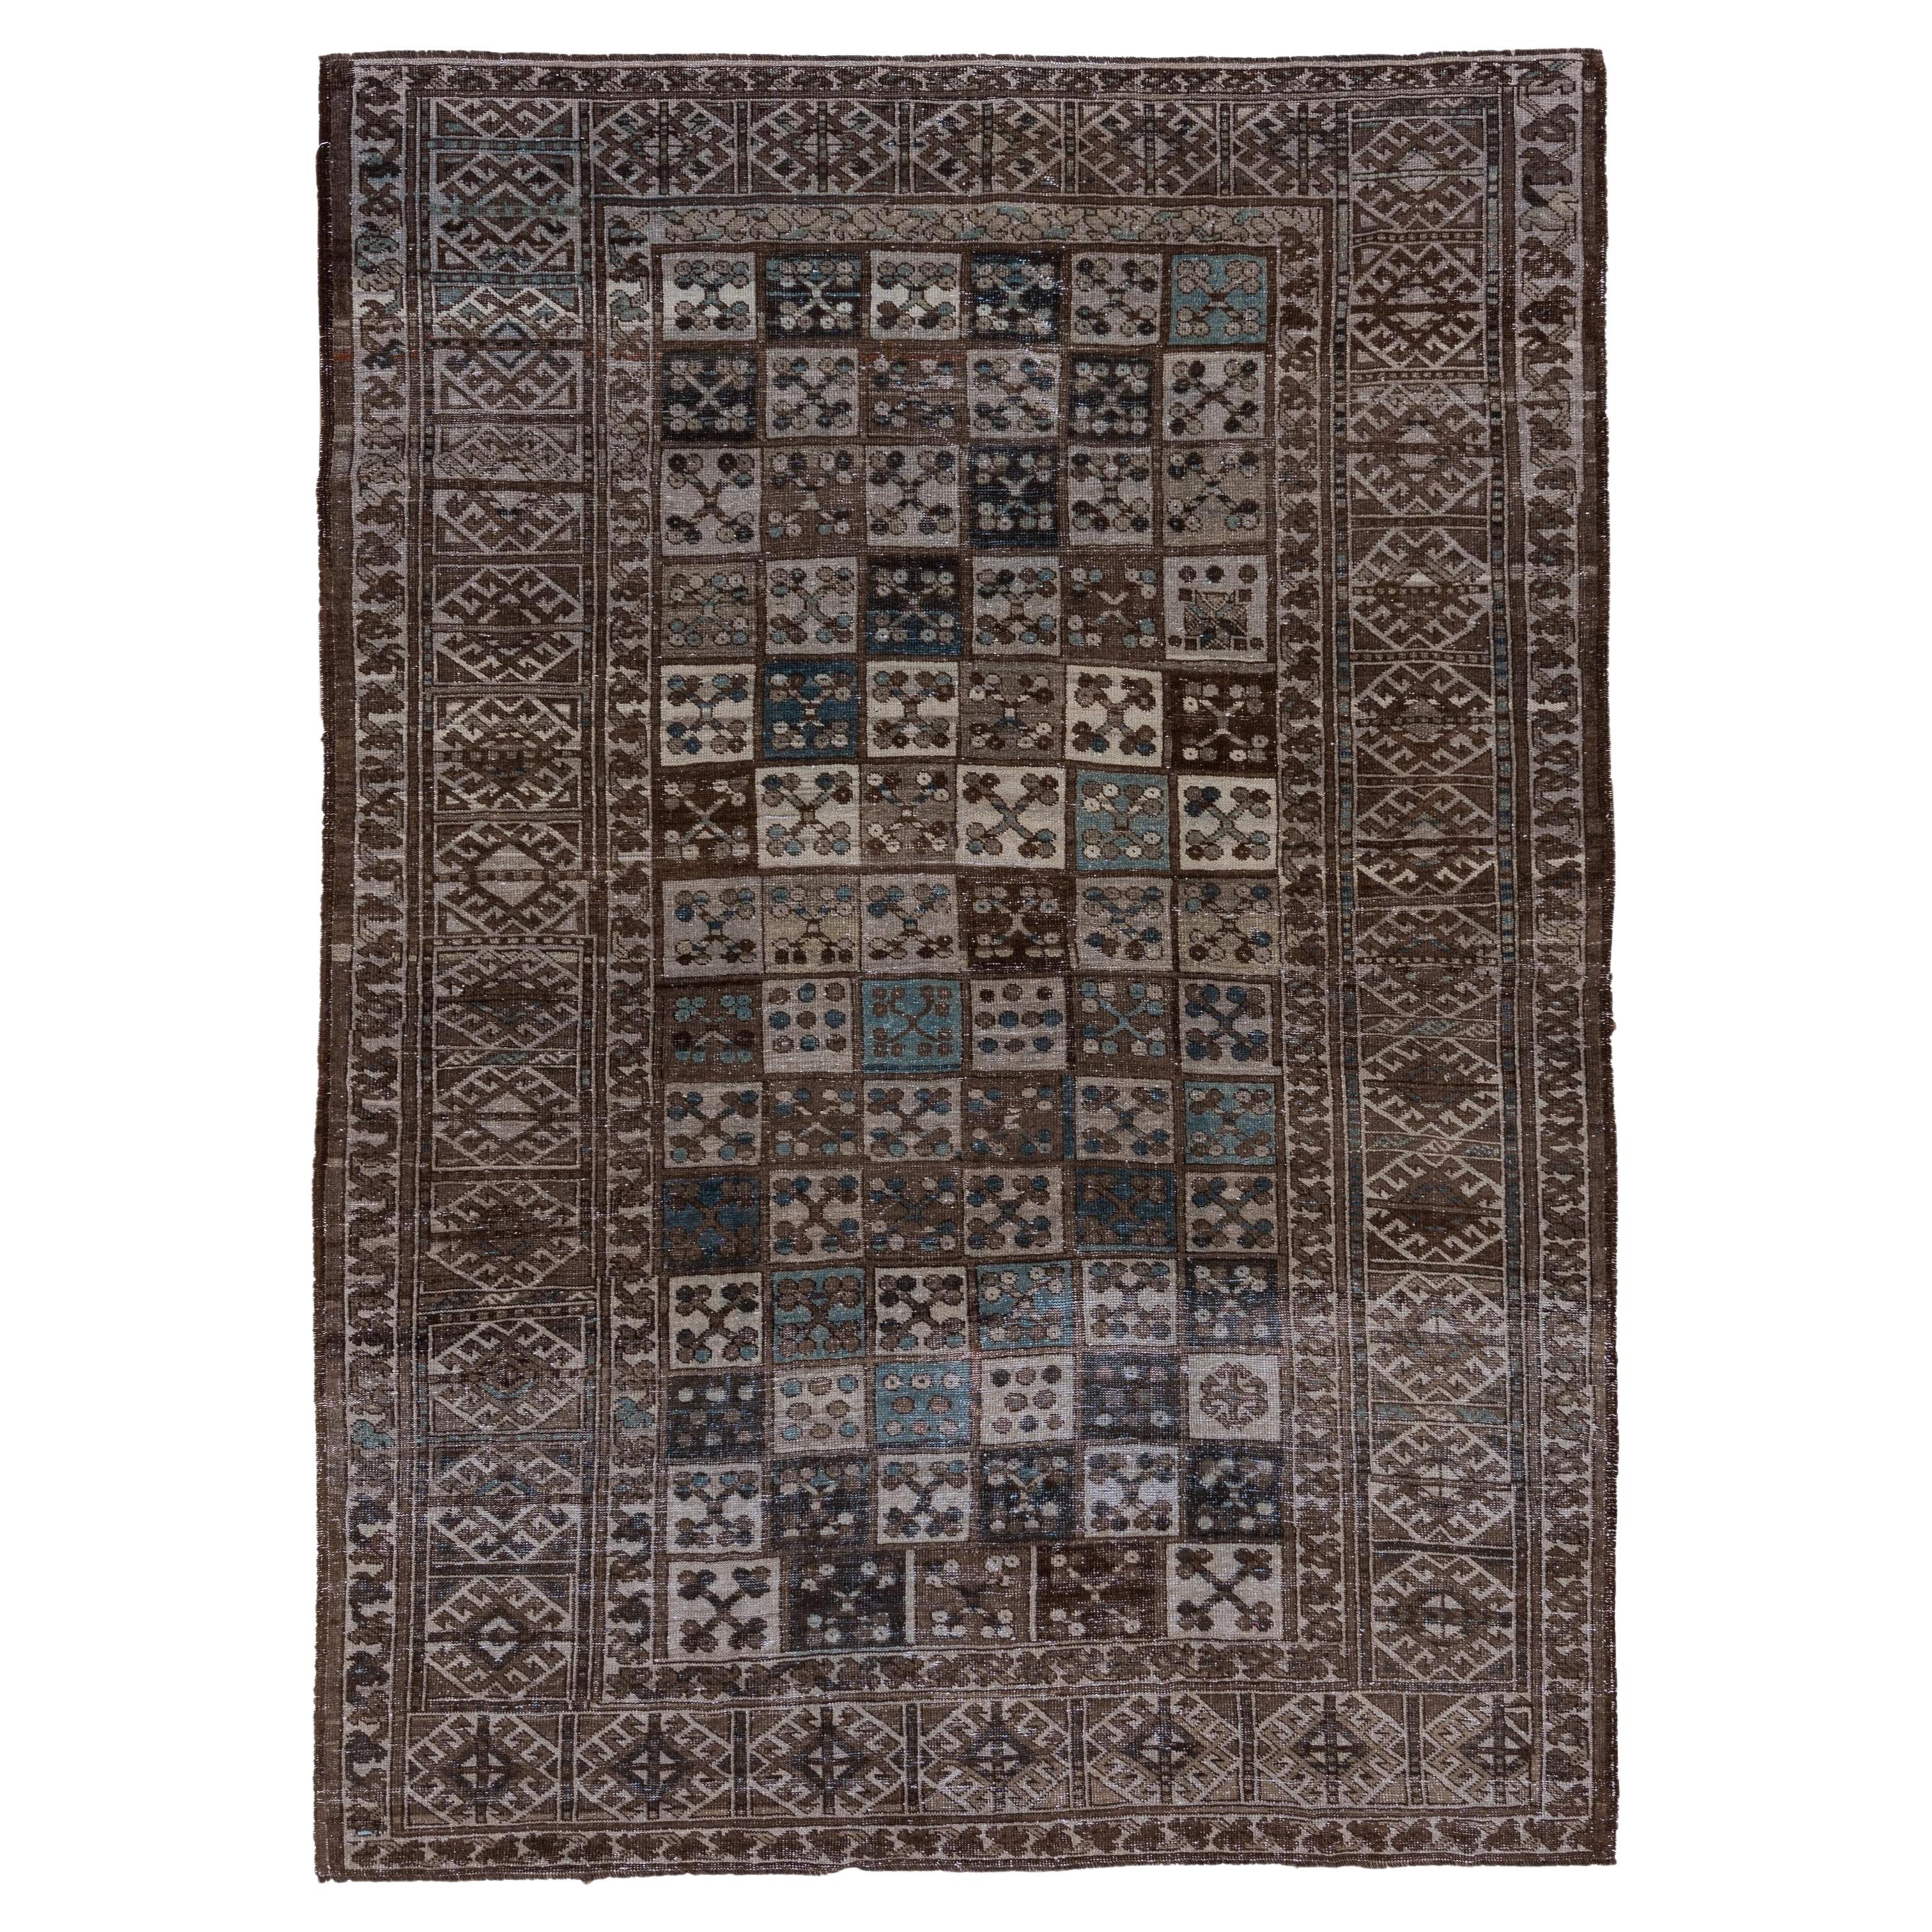 Brown Afghan Ersari Carpet, Allover Field, Blue Tones, Teal Tones